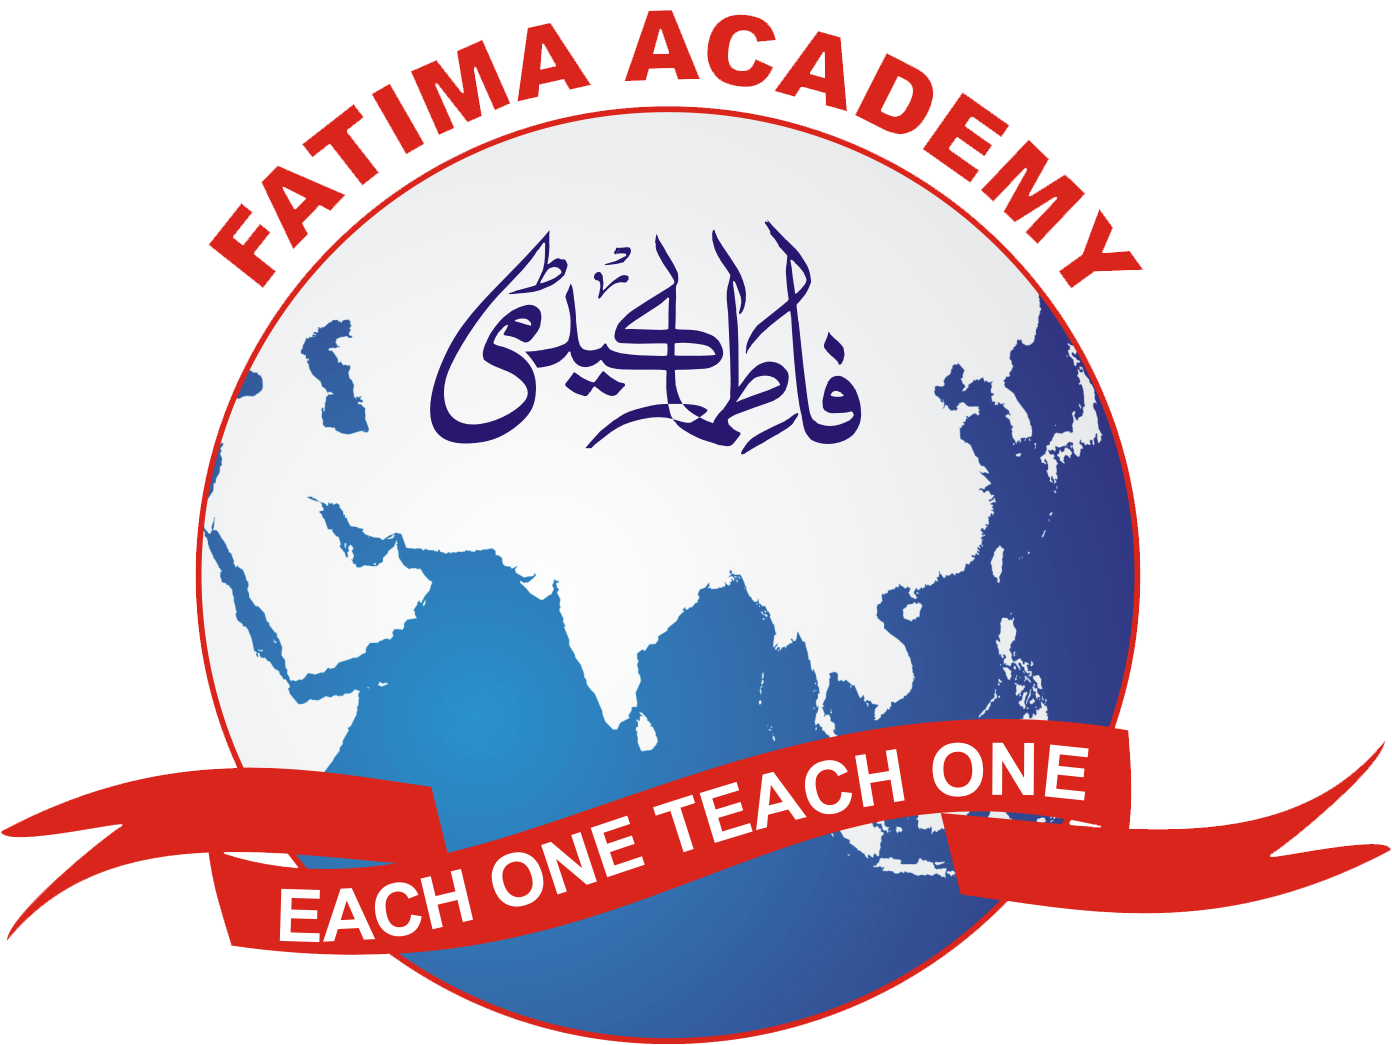 Fatima Academy | Each One Teach One